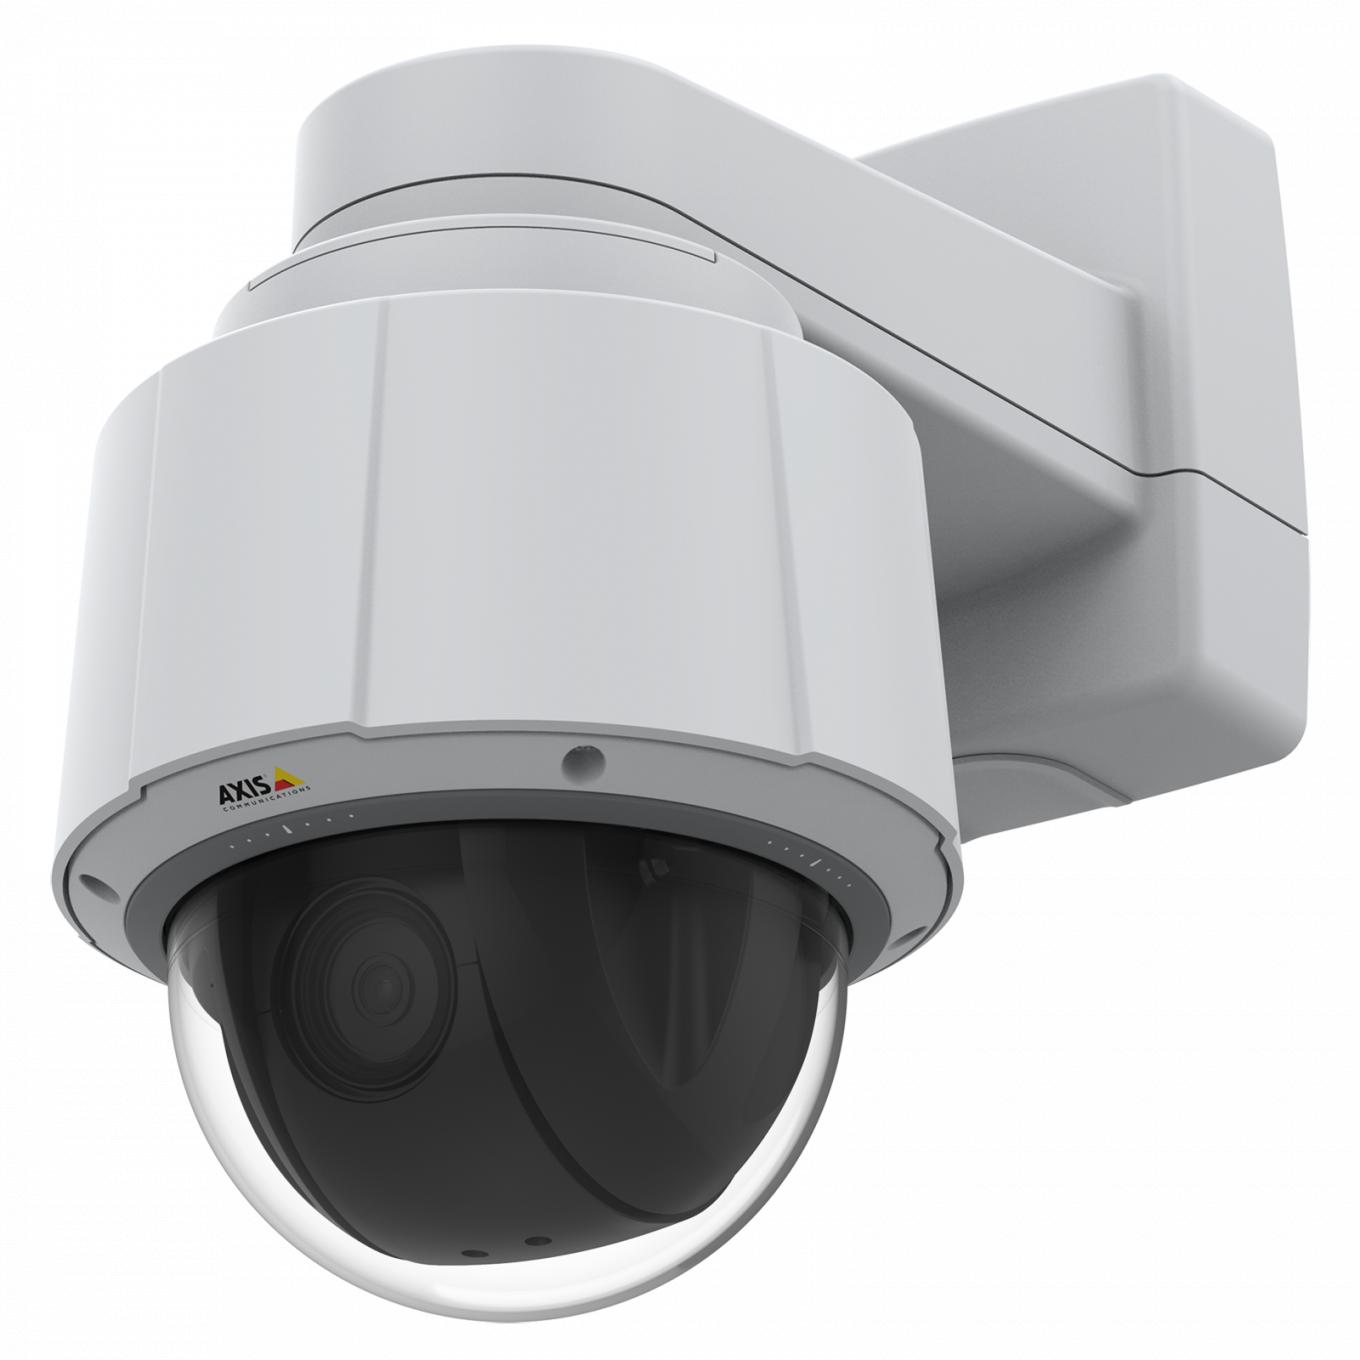 Axis IP Camera Q6075 tiene TPM con certificado FIPS 140-2 de nivel 2 y analítica integrada